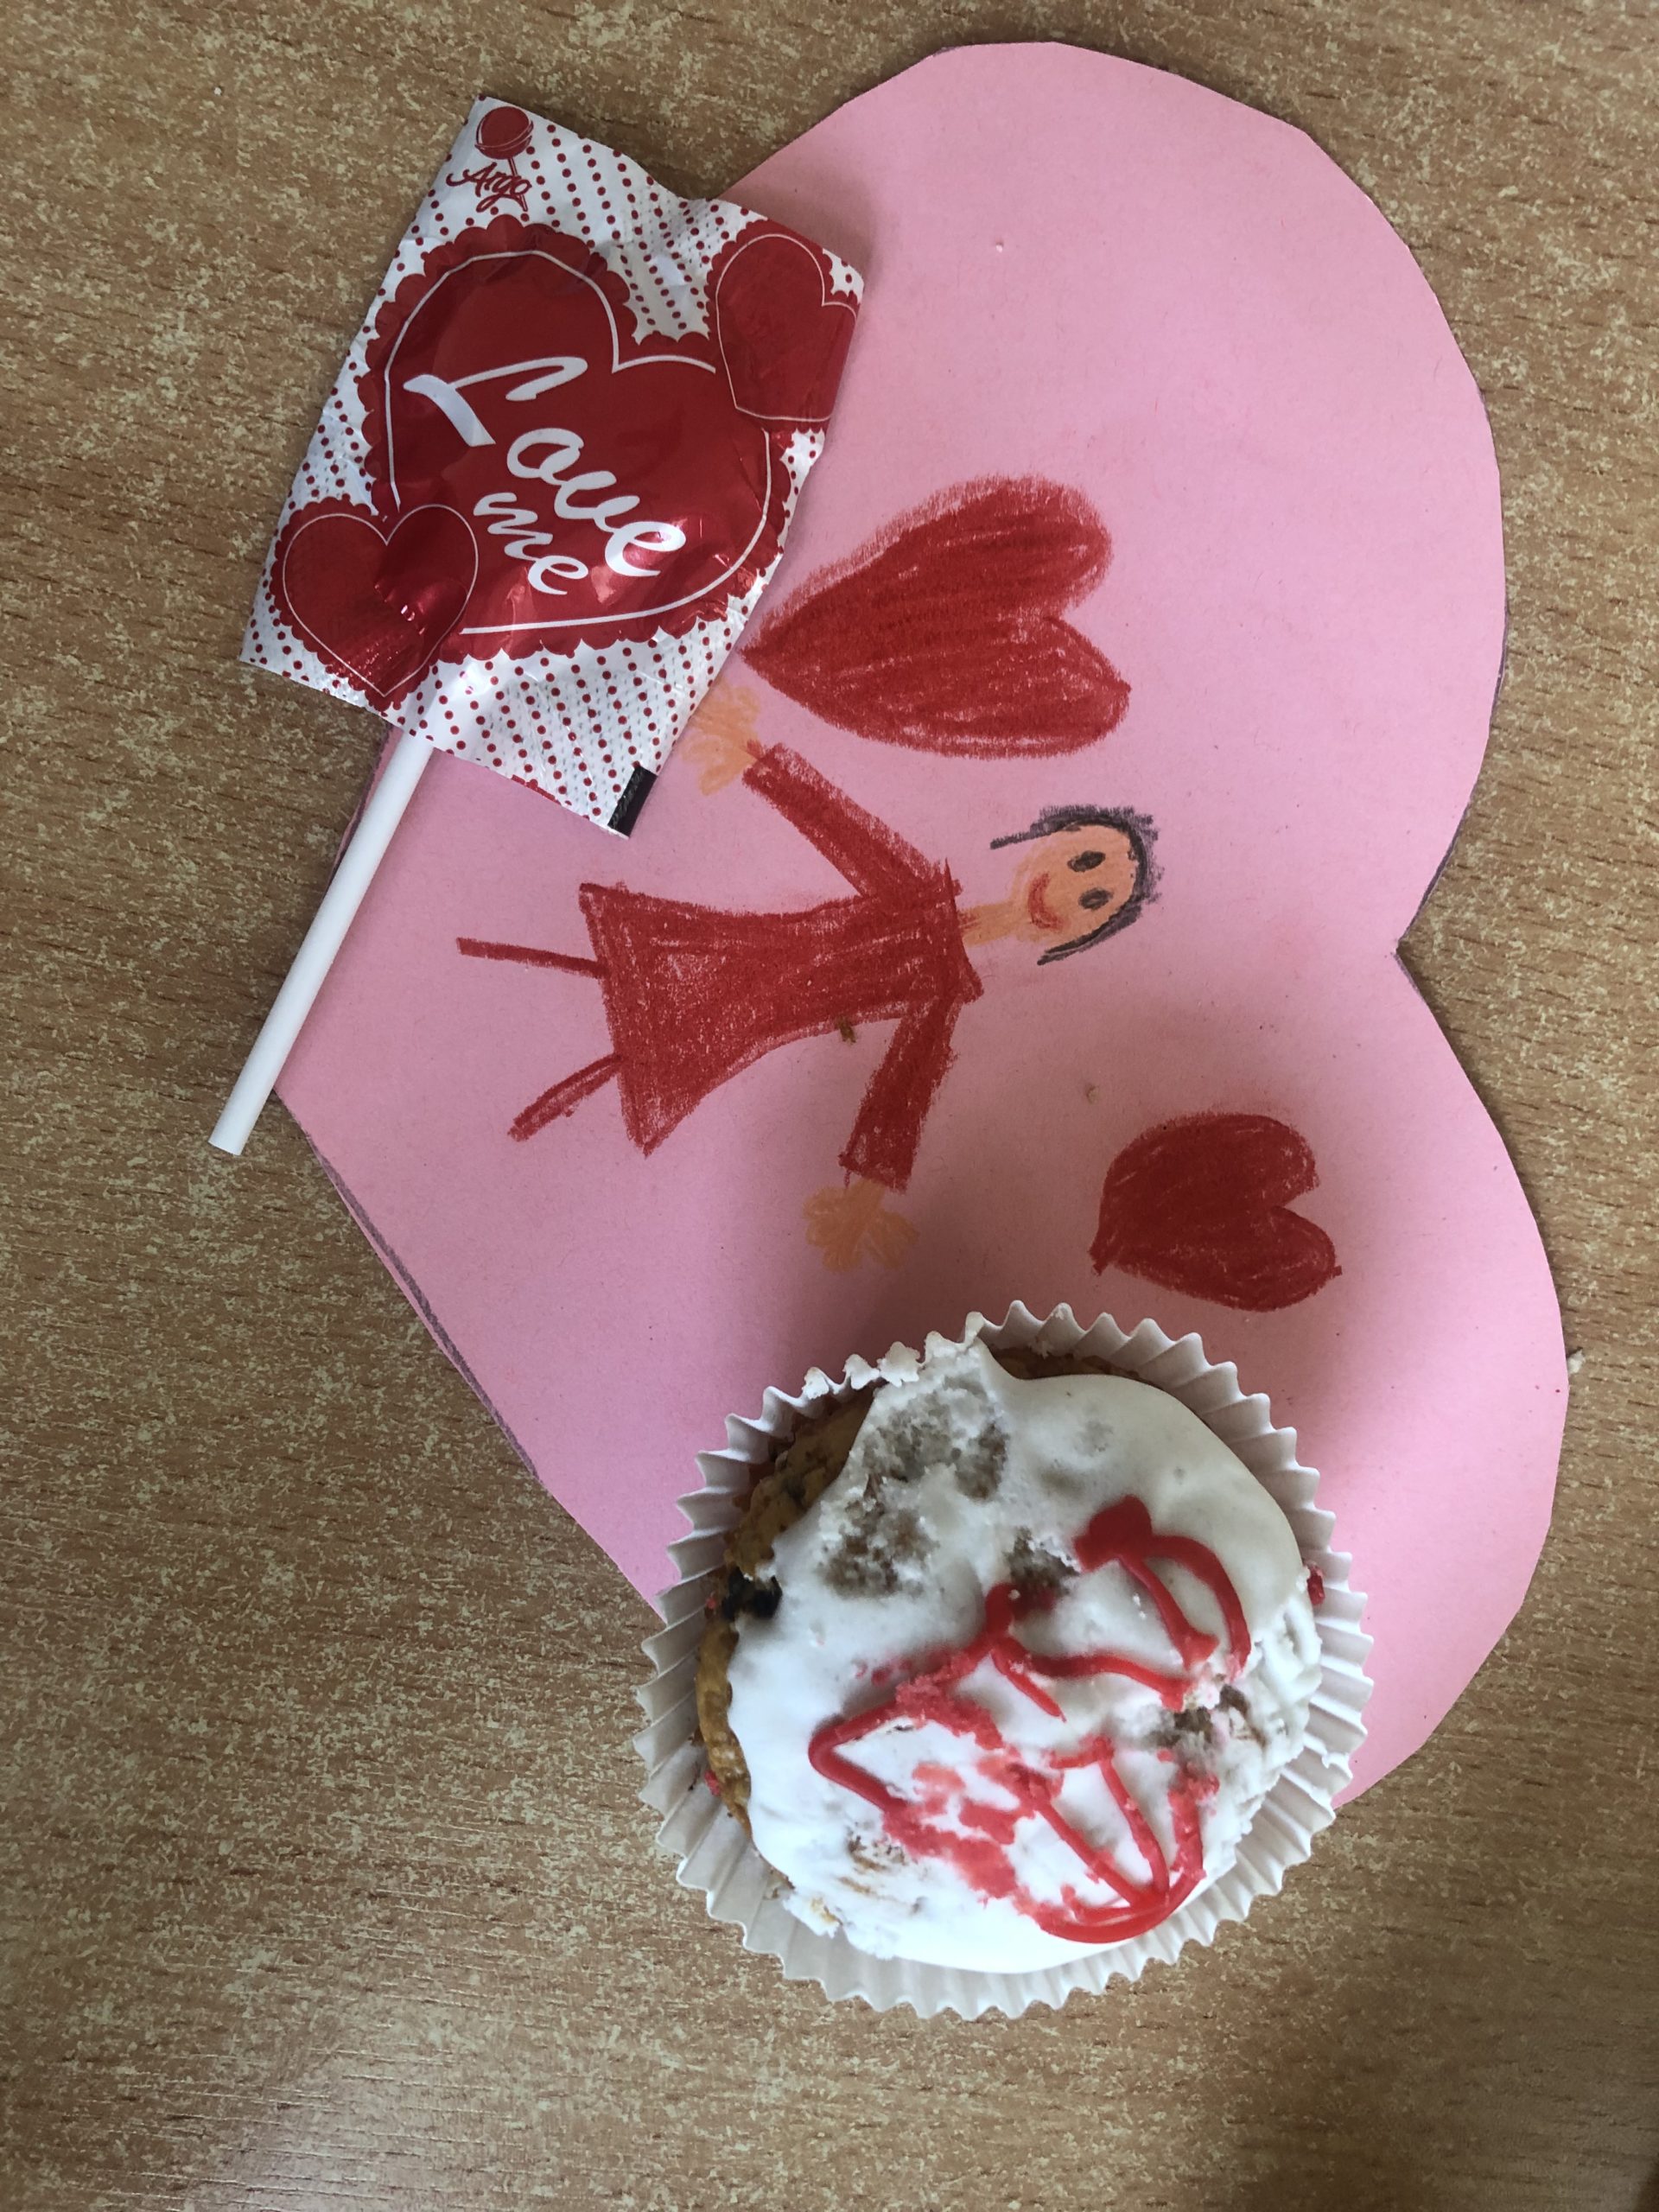 Kartka walentynkowa przestawiający dziewczynkę i serduszka. Na niej leży lizak w kształcie serca i muffinka z lukrowany czerwonym sercem.